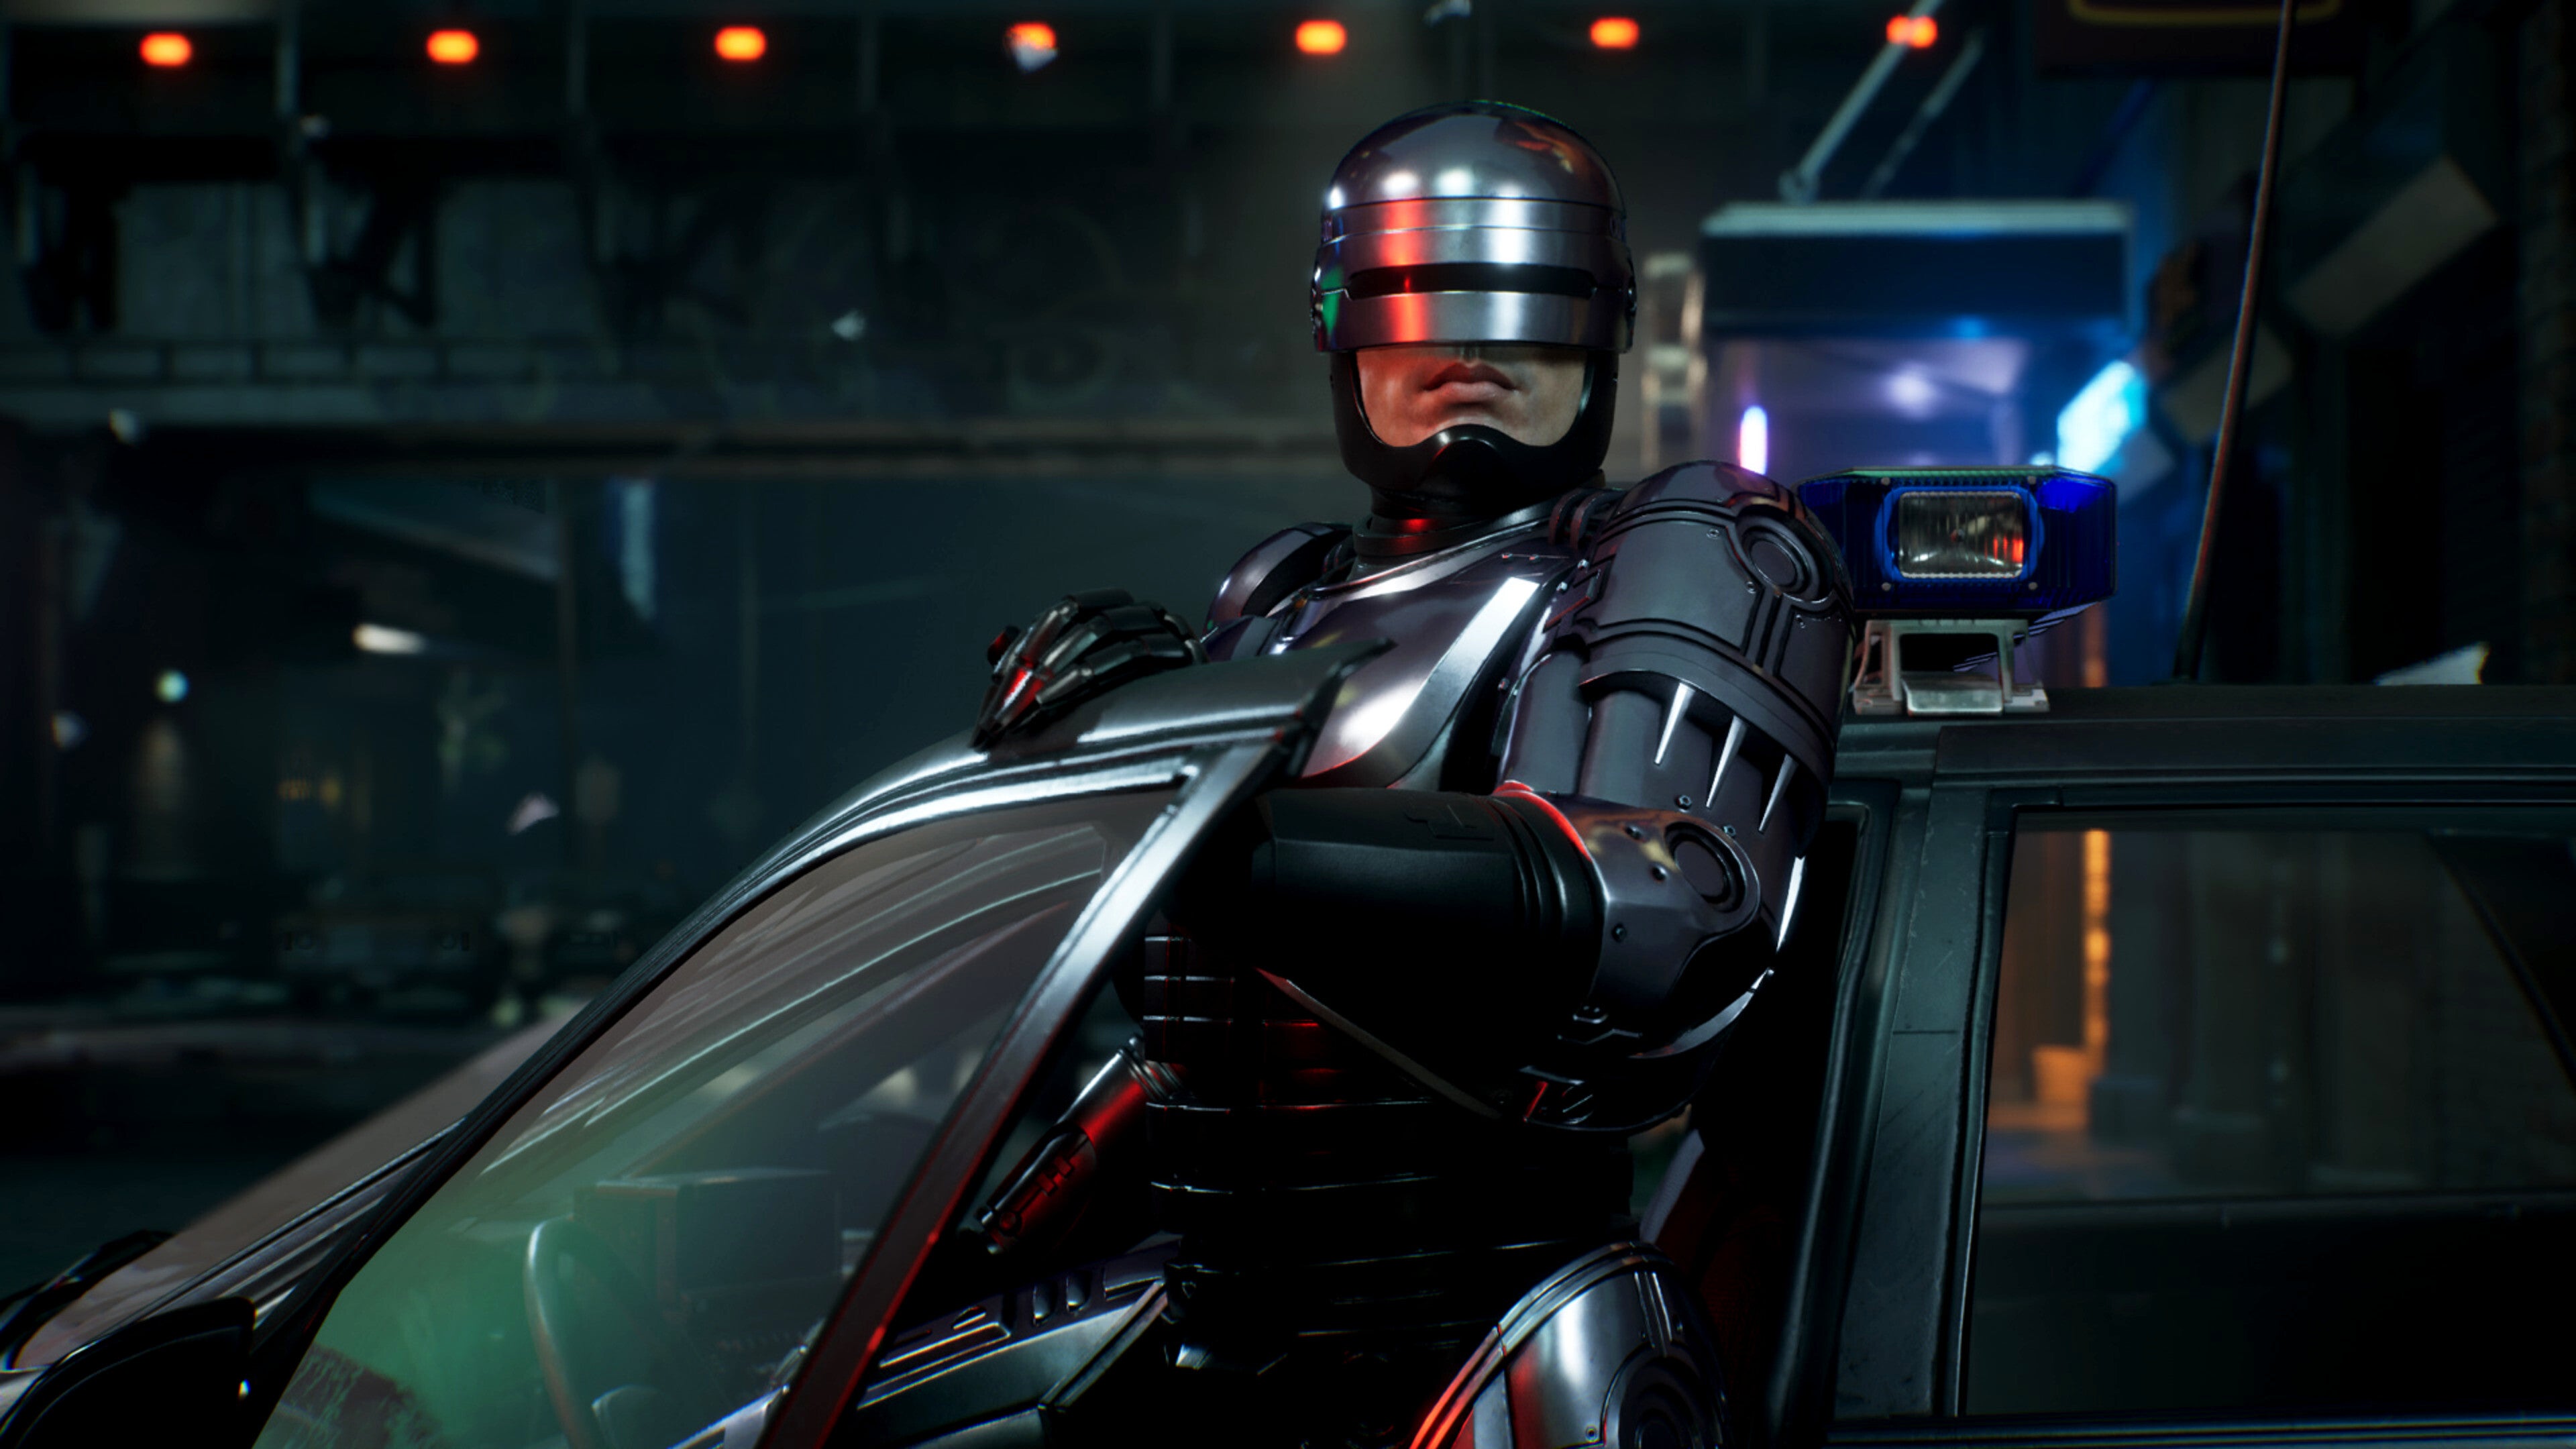 Скриншот игры Робокоп: Город-изгой, на котором показано, как Робокоп выходит из машины.